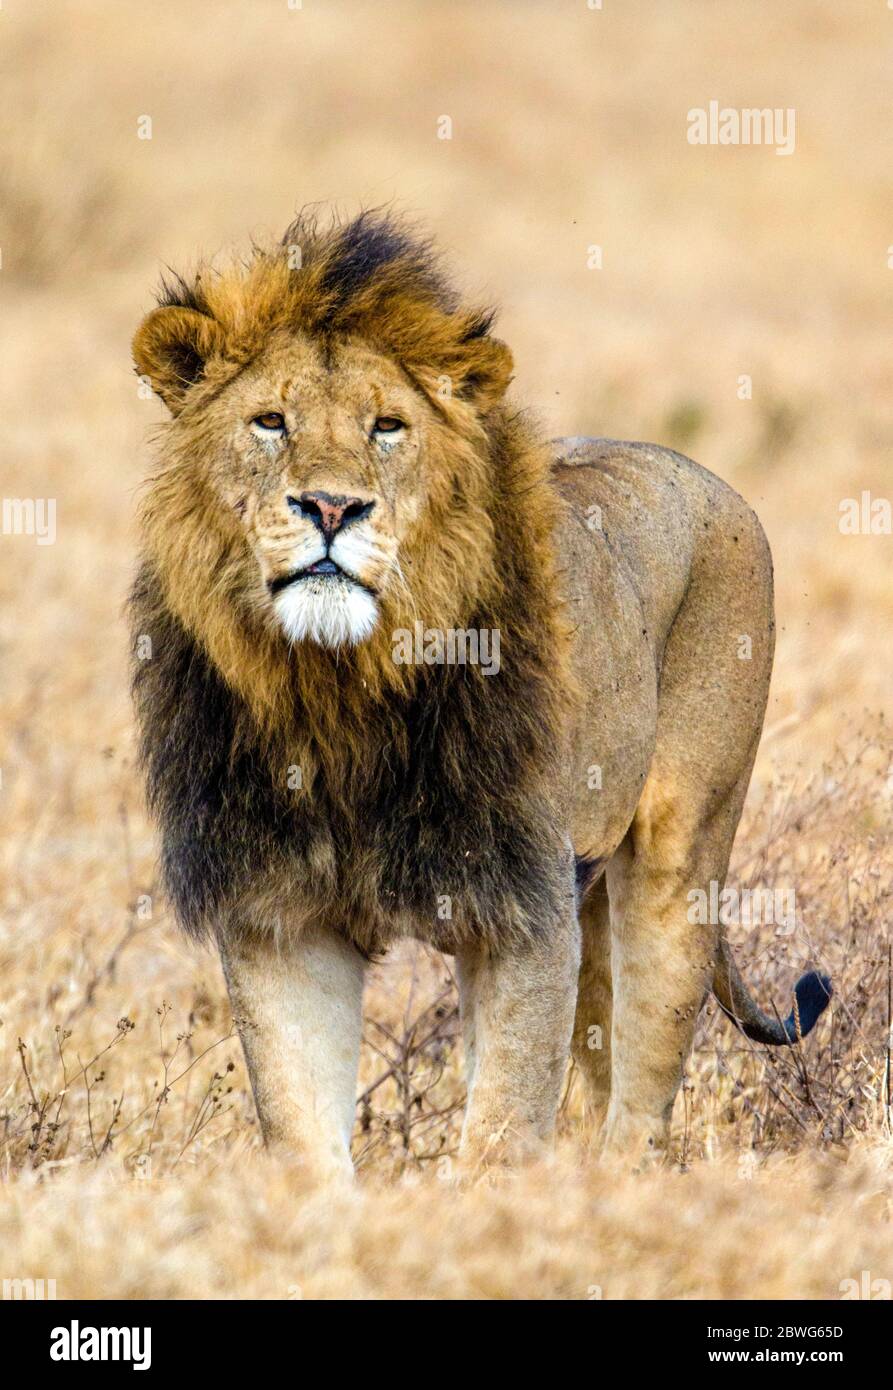 Lion mâle (Panthera leo) regardant la caméra, zone de conservation de Ngorongoro, Tanzanie, Afrique Banque D'Images